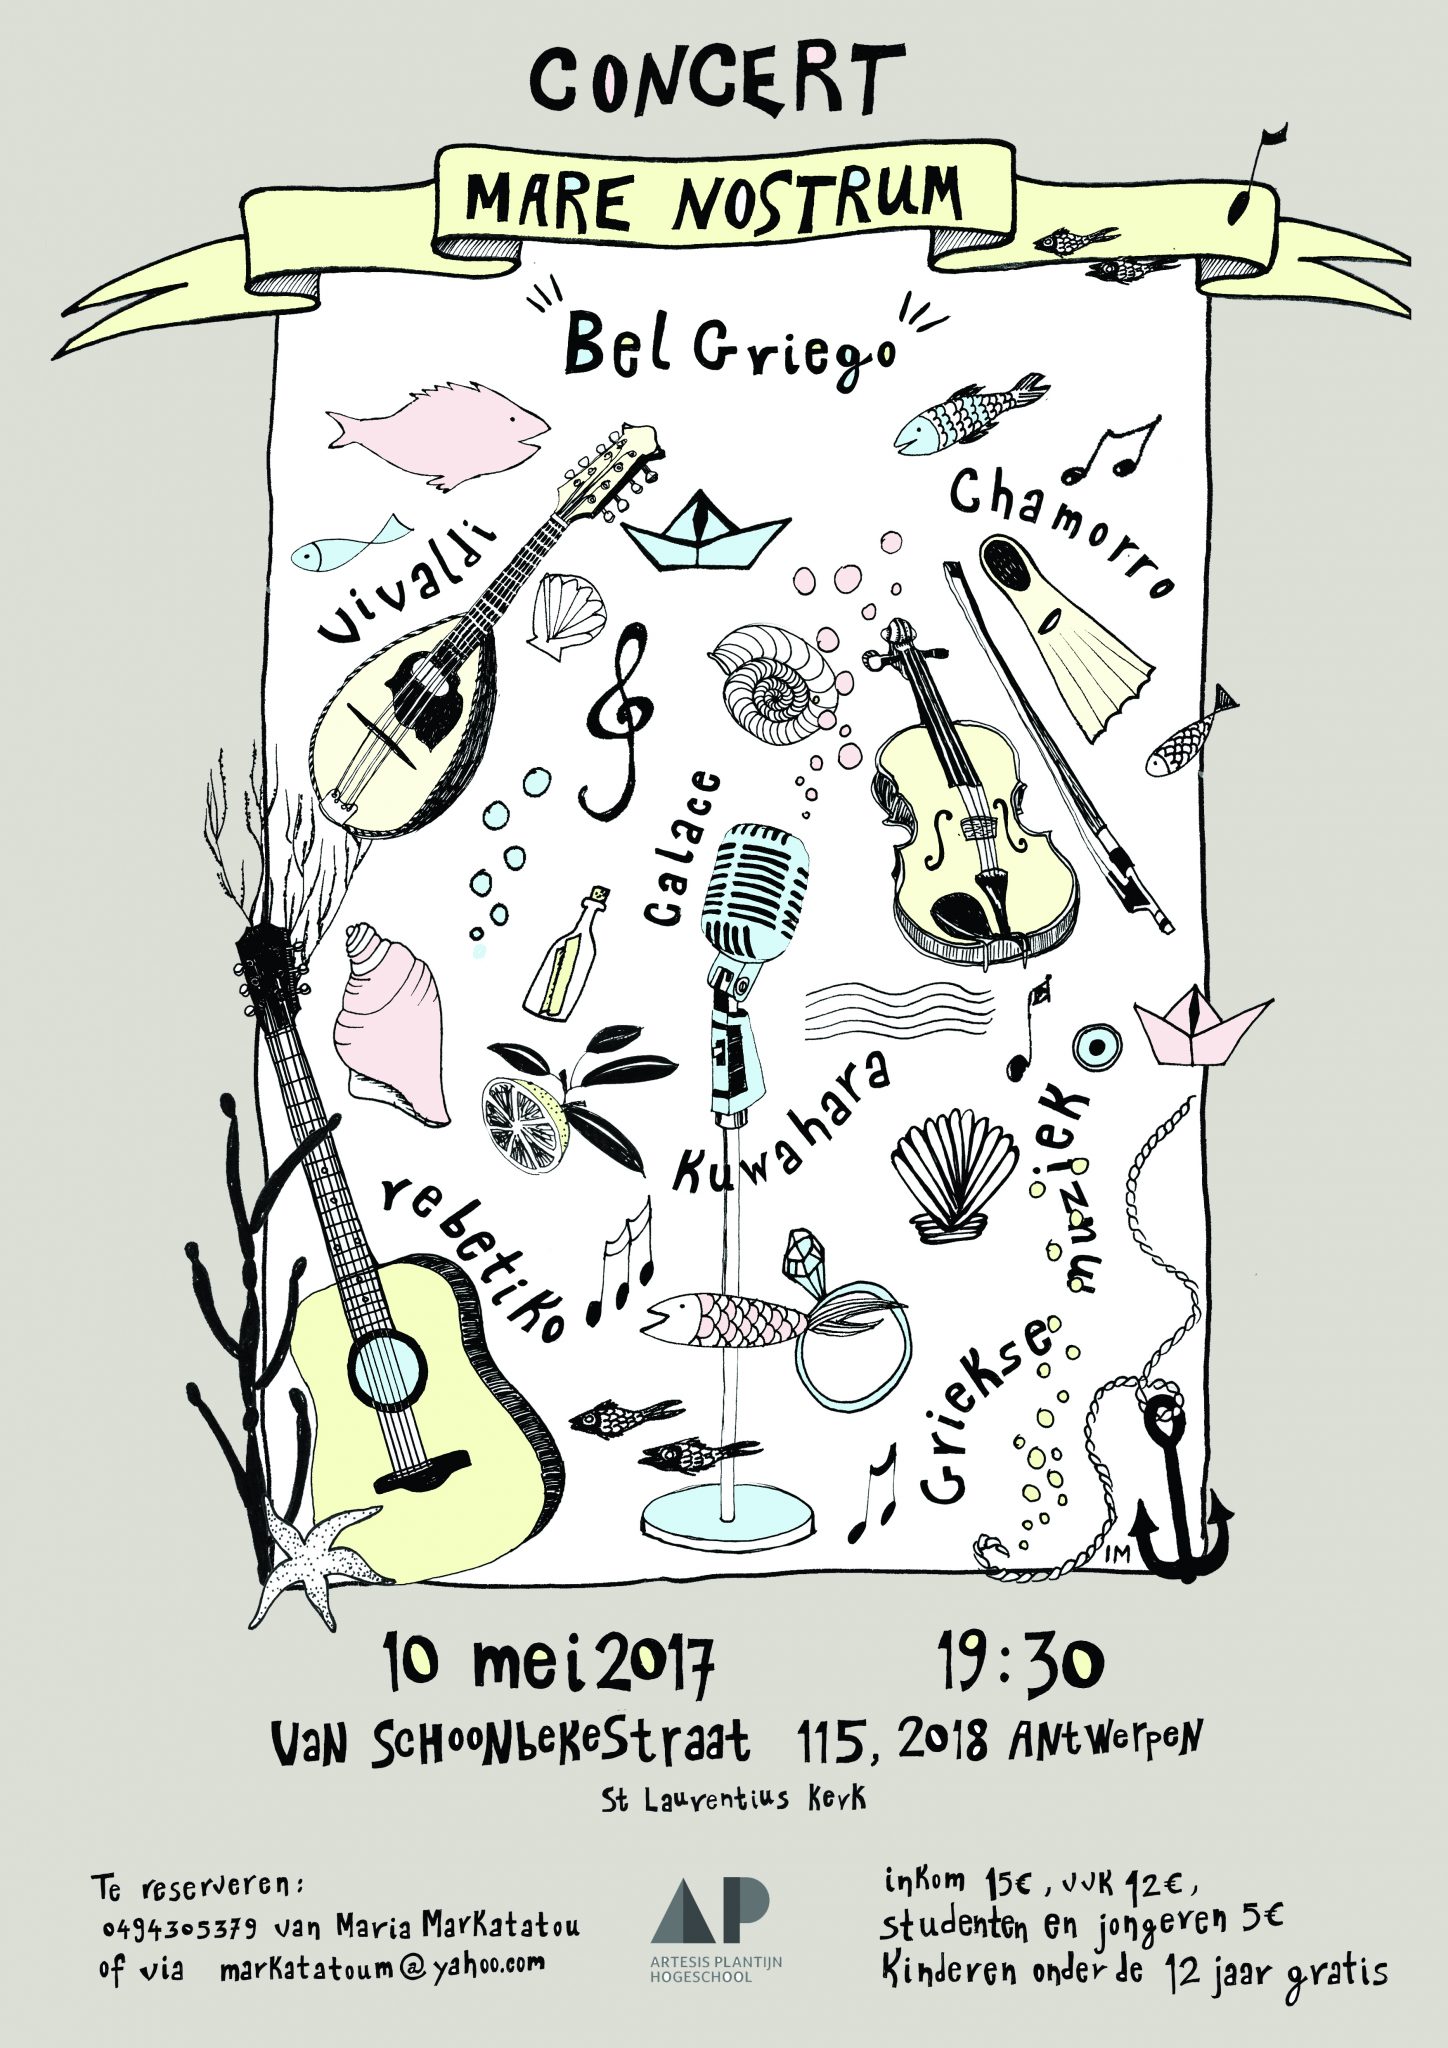 Mare Nostrum Concert - BelGriego @ Sint Laurentius | Antwerpen | Vlaanderen | België